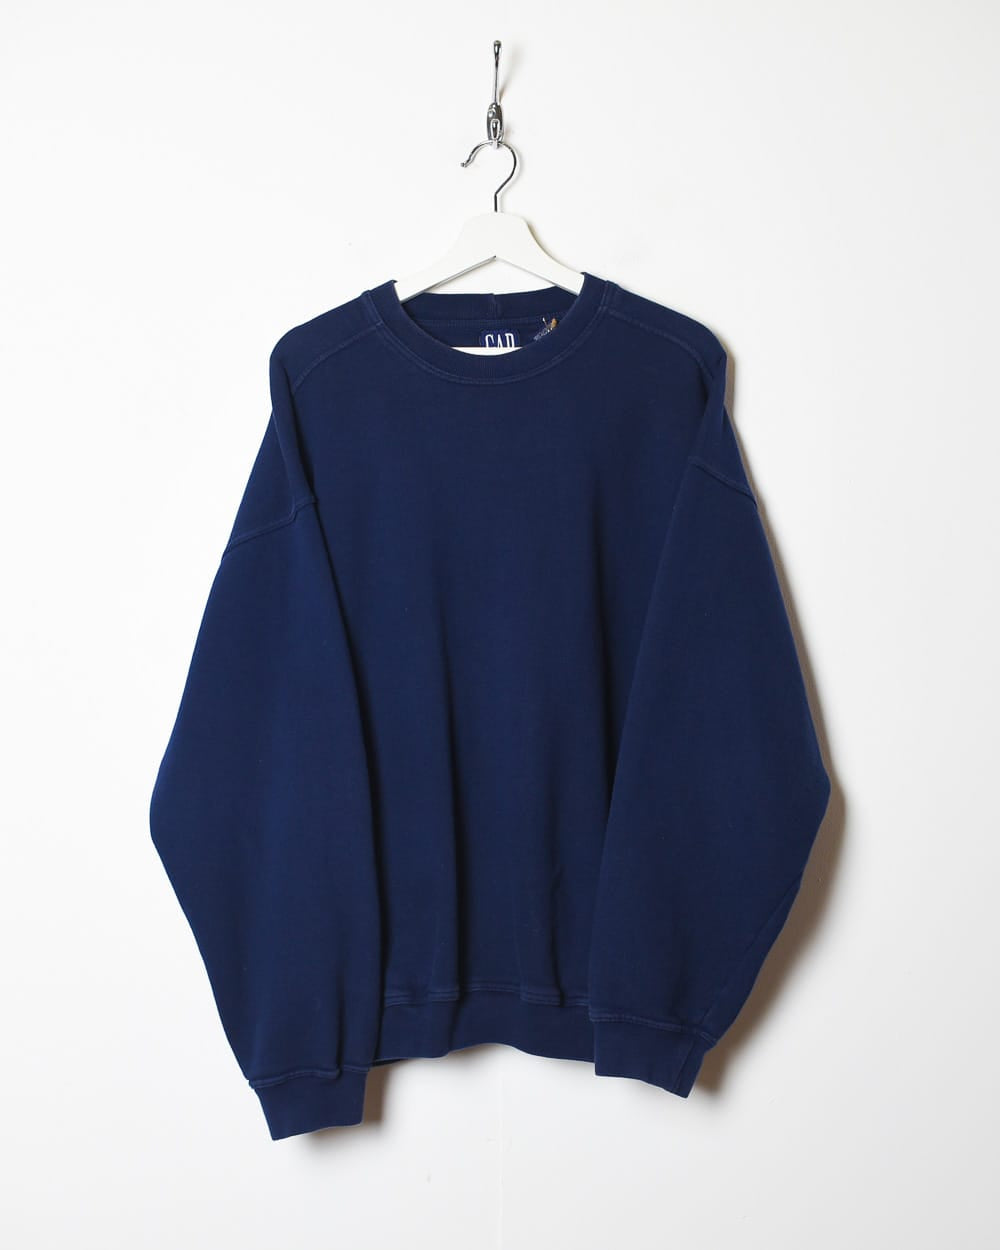 Navy Gap Sweatshirt - Large